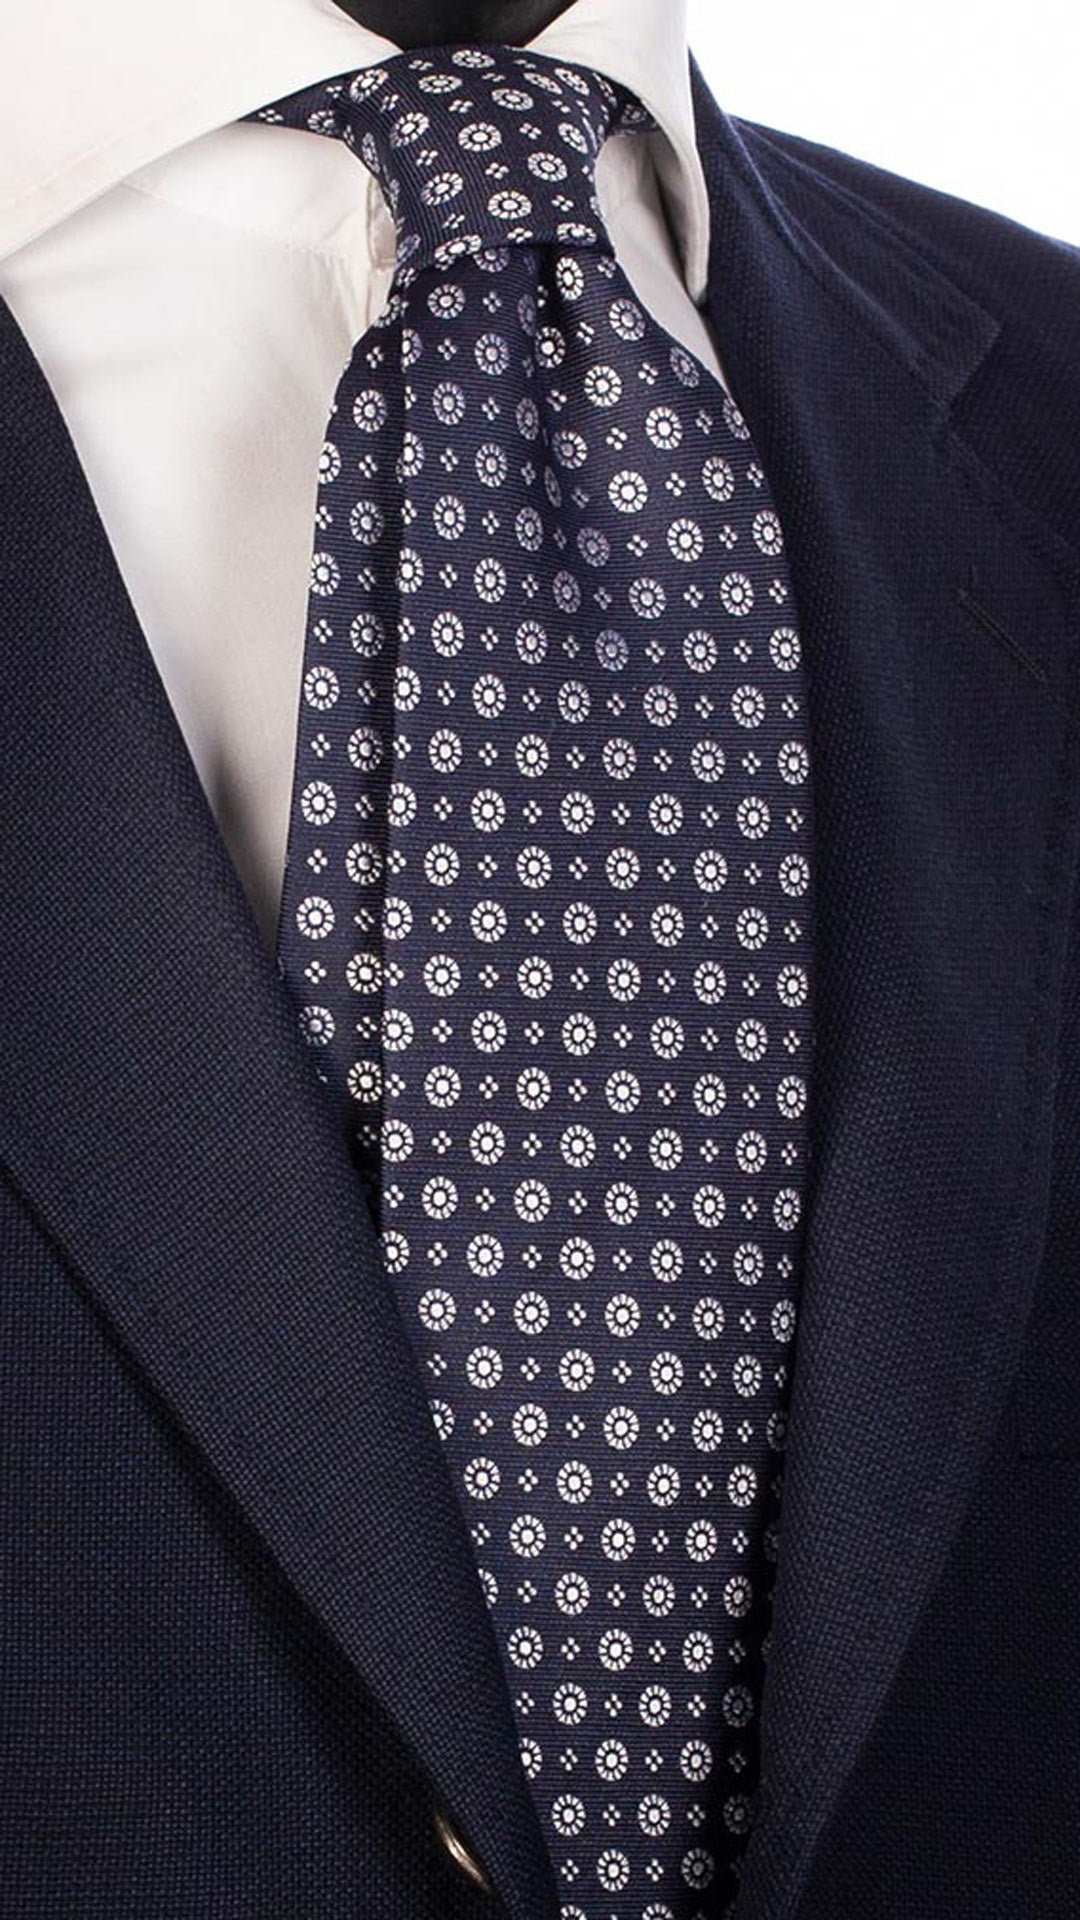 Cravatta da Cerimonia di Seta Blu Fantasia Bianca CY4543 Made in Italy Graffeo Cravatte